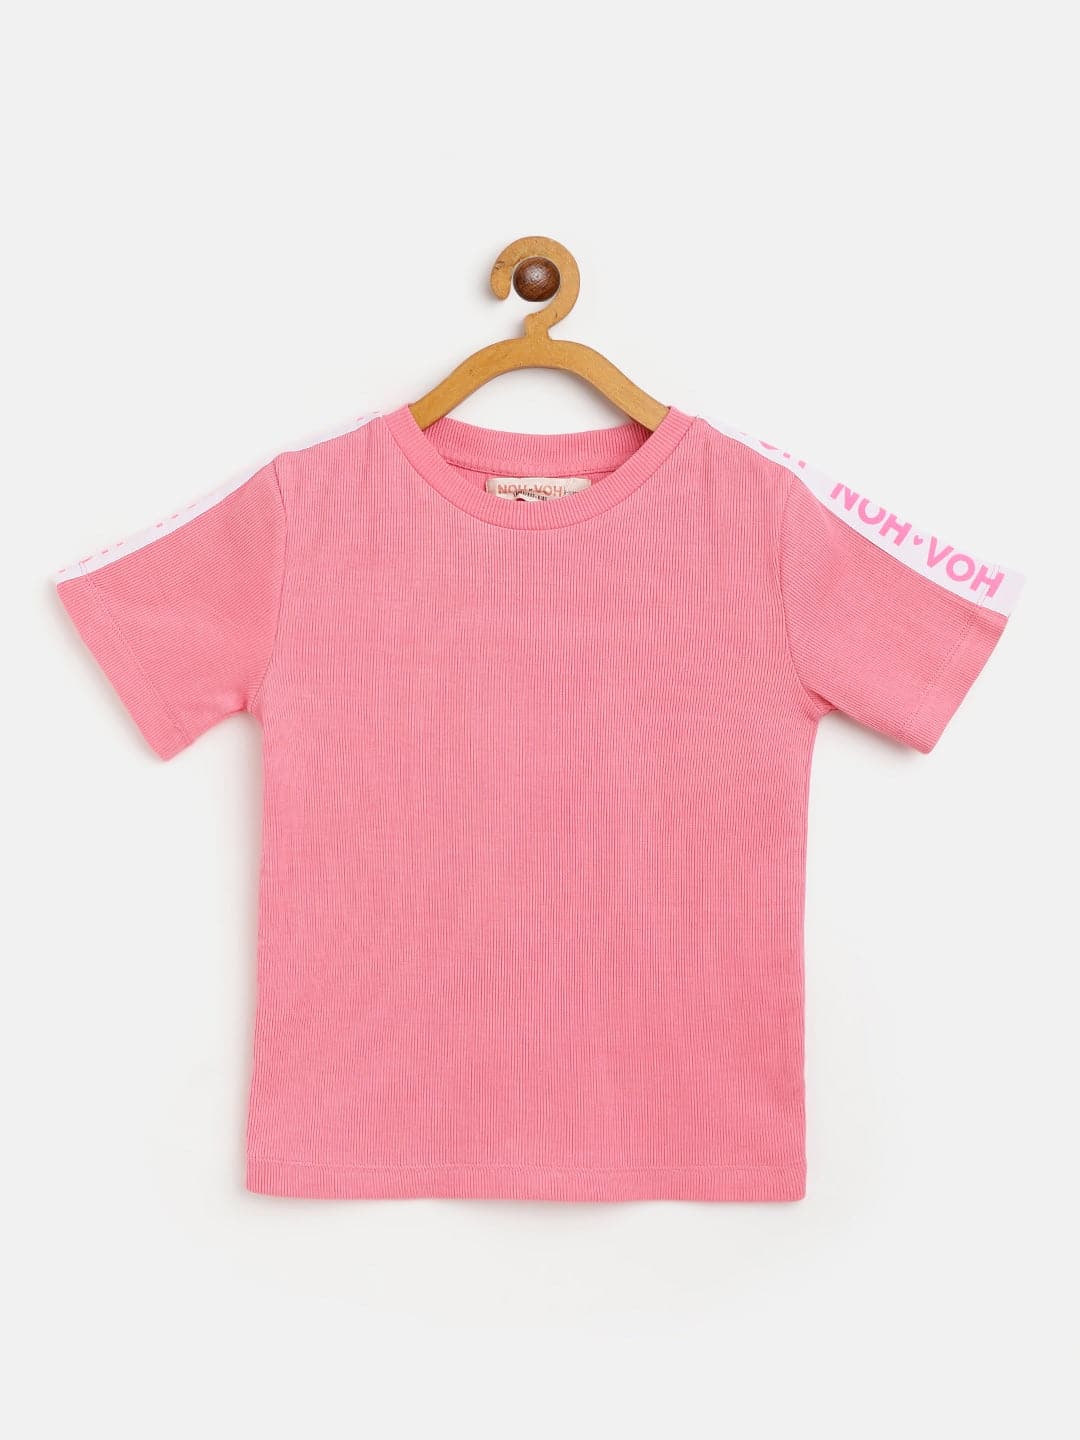 Girls Pink Rib Brand Tape Half Sleeve Top - Lyush Kids